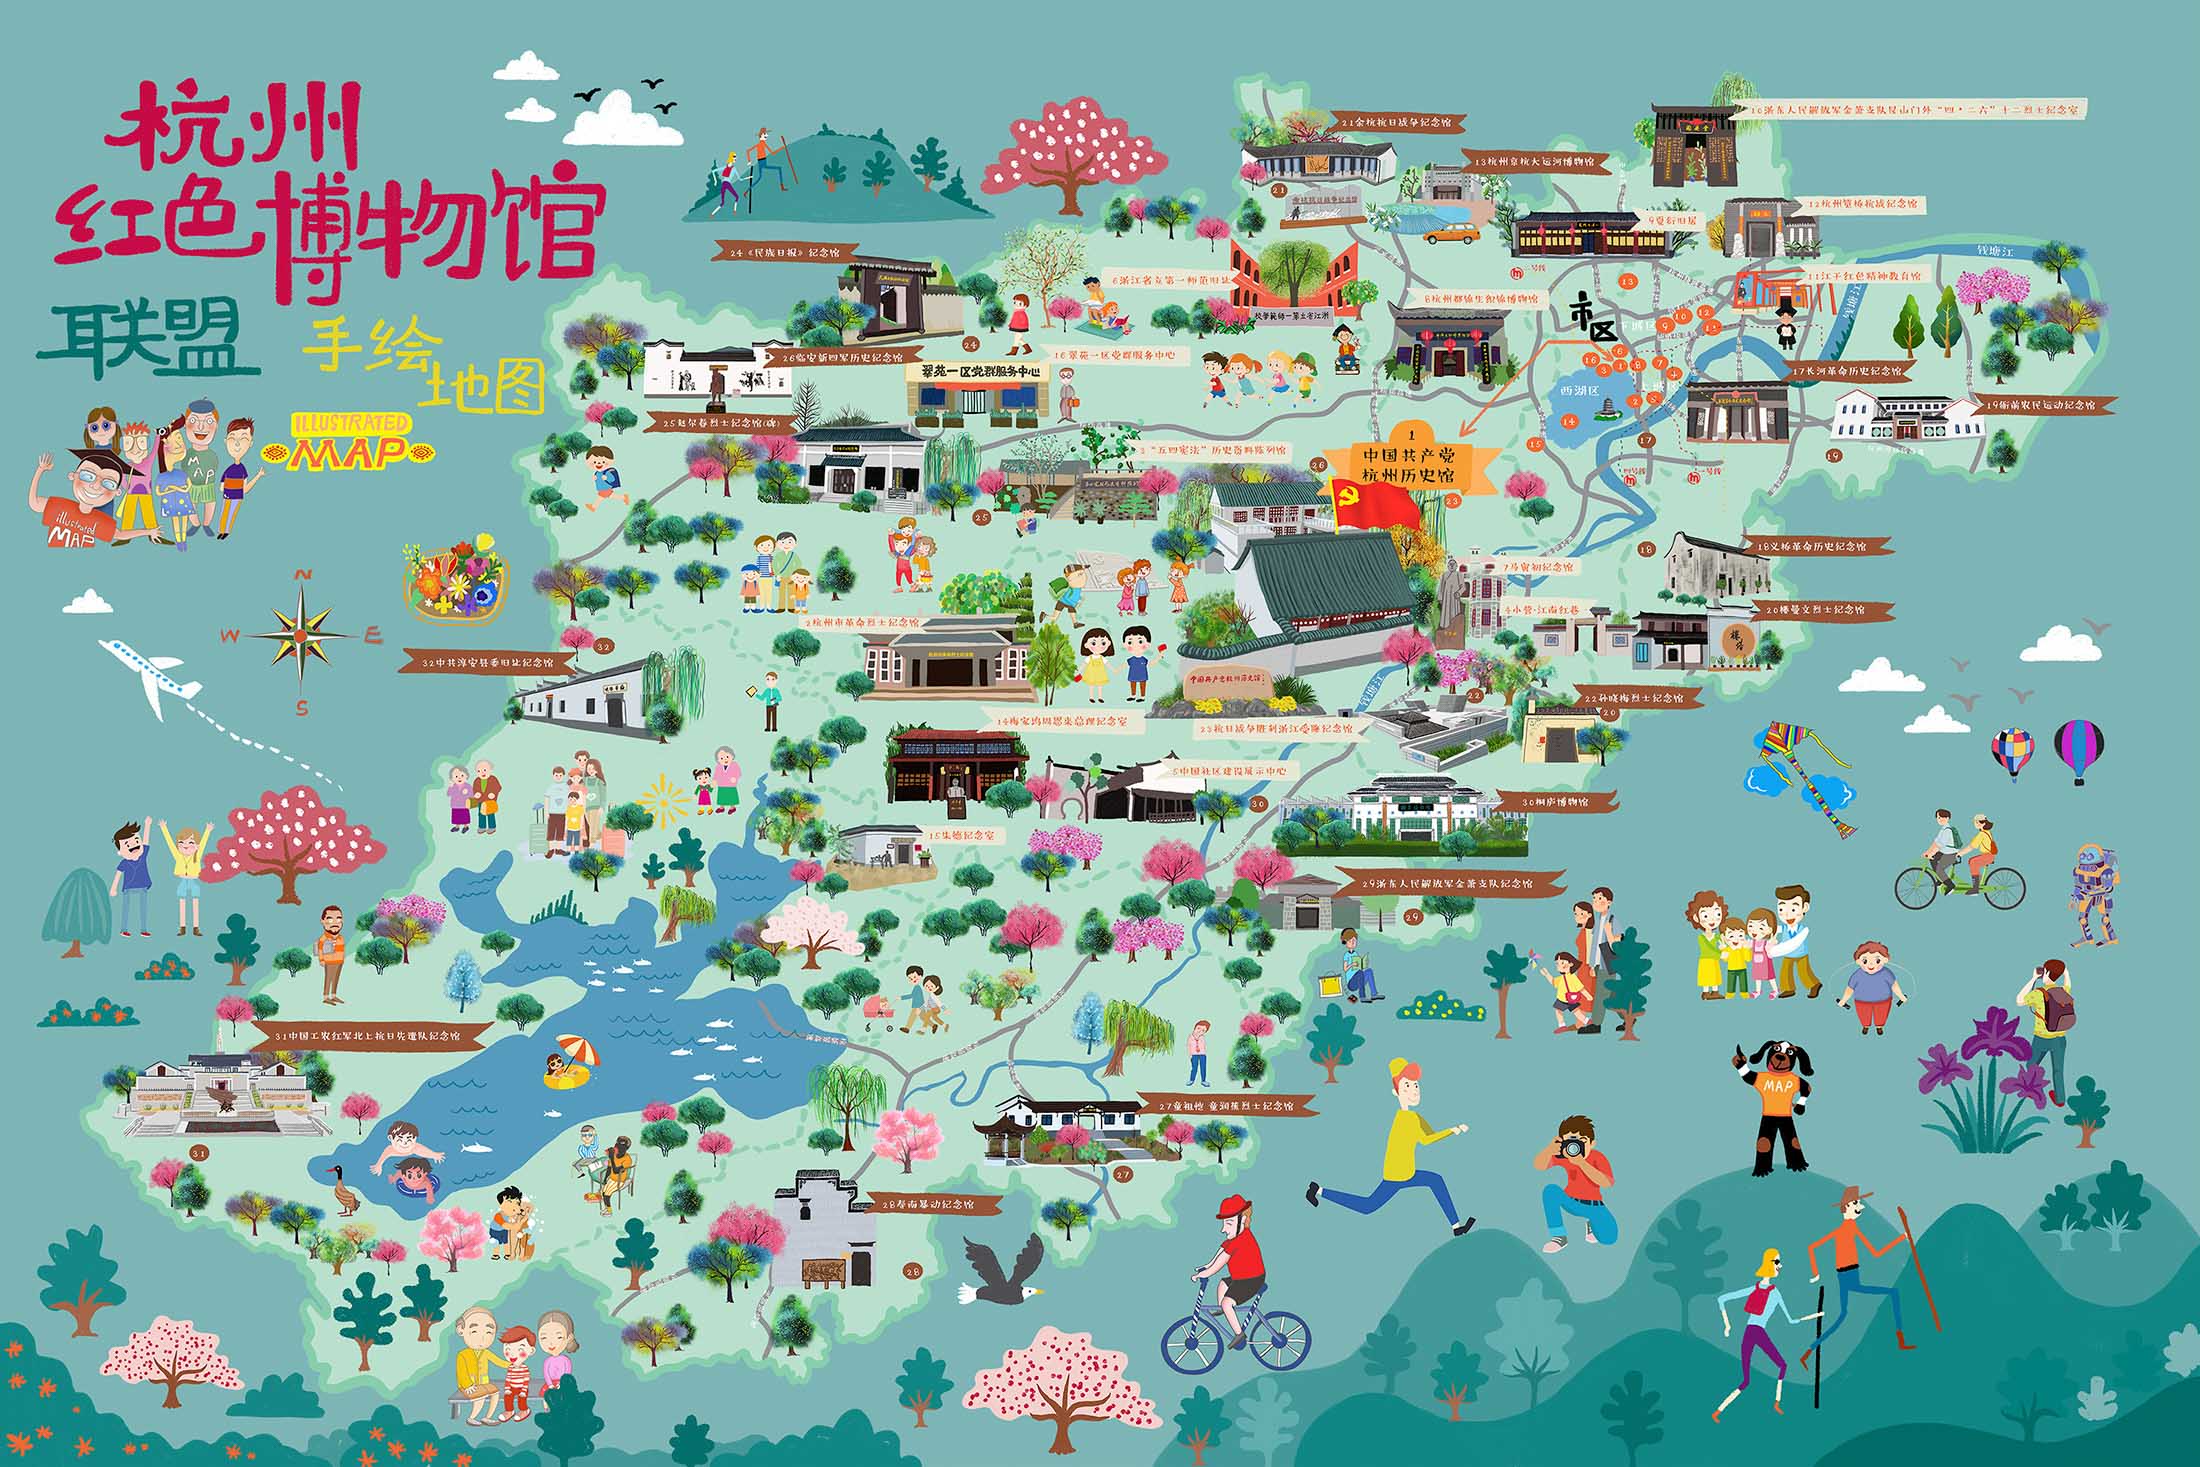 三伏潭镇手绘地图与科技的完美结合 